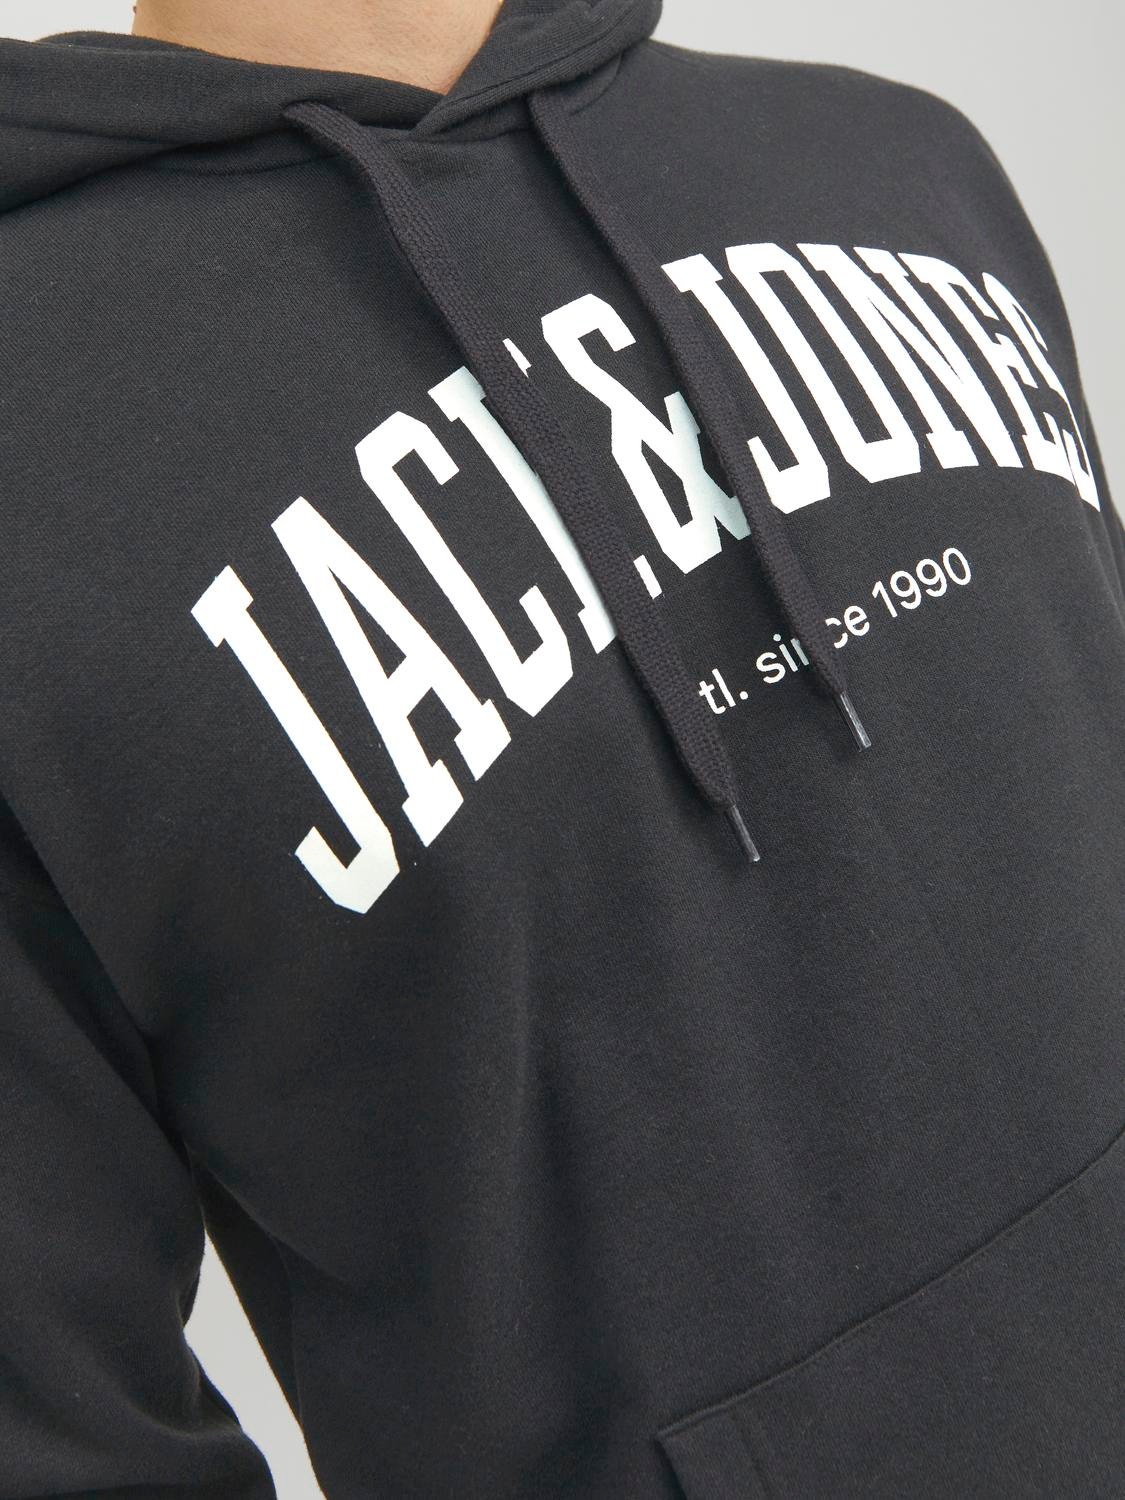 Jack & Jones Logo Hettegenser -Black - 12236513